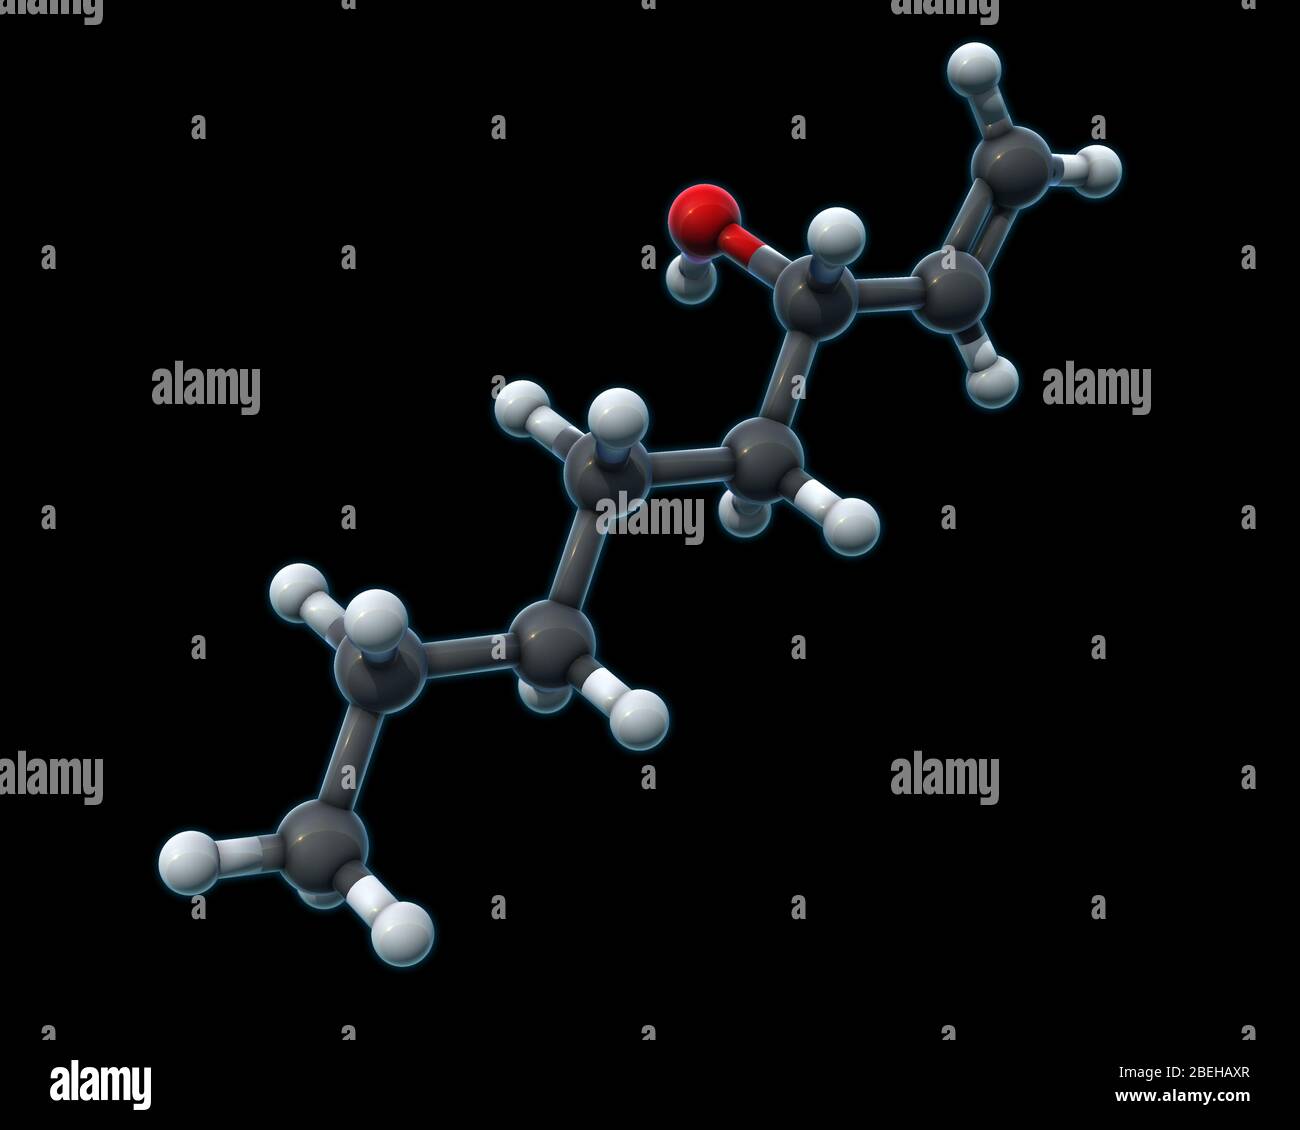 Modelo molecular 3D de octenol, también conocido como 1-octen-3-ol o 'alcohol de champiñones'. El octenol es un químico que se encuentra en la respiración y el sudor humanos, las plantas y los fugi, que atrae insectos picantes como los mosquitos. El octenol se forma durante la descomposición del ácido linoleico. Los átomos son de color gris oscuro (carbono), gris claro (hidrógeno) y rojo (oxígeno). Foto de stock